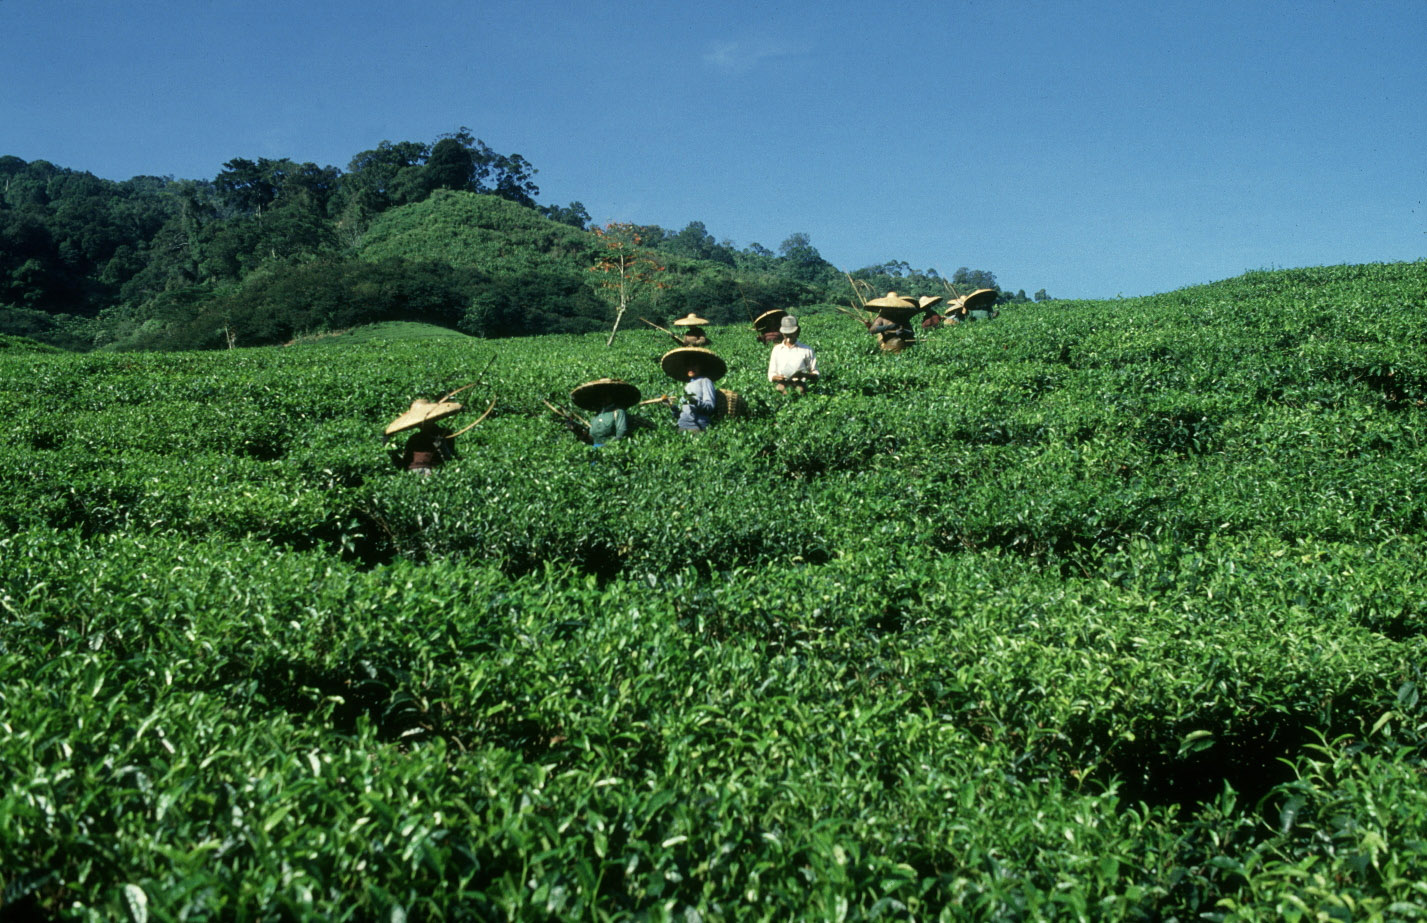 بإمكان الشاي تحويل النظم الزراعية والغذائية للقضاء على الفقر والجوع